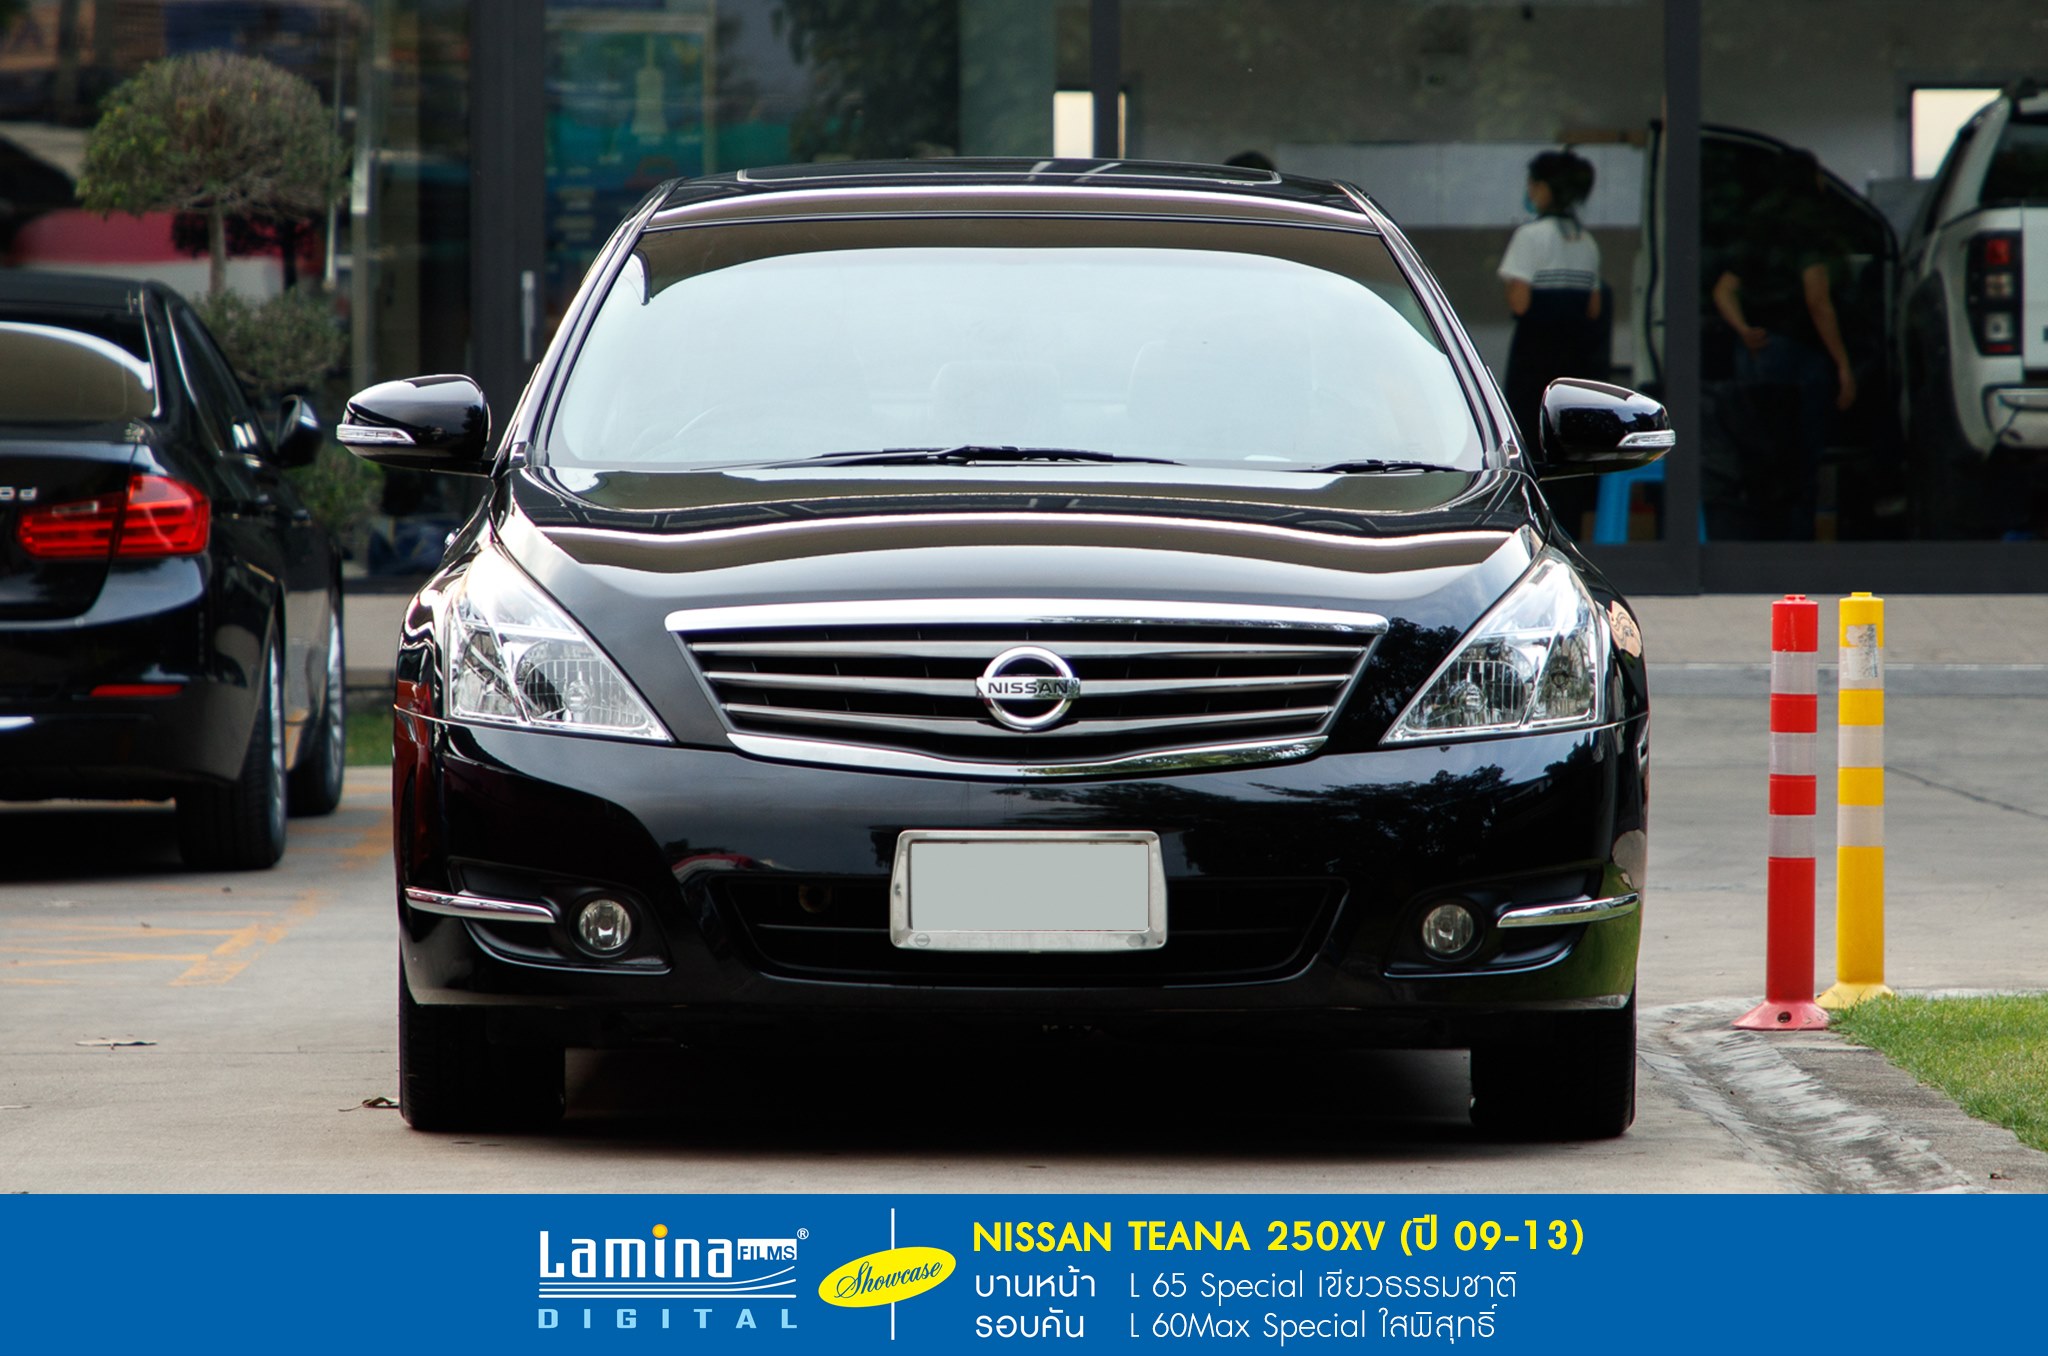 ฟิล์มใสกันร้อน lamina special series Nissan Teana 250xv 1